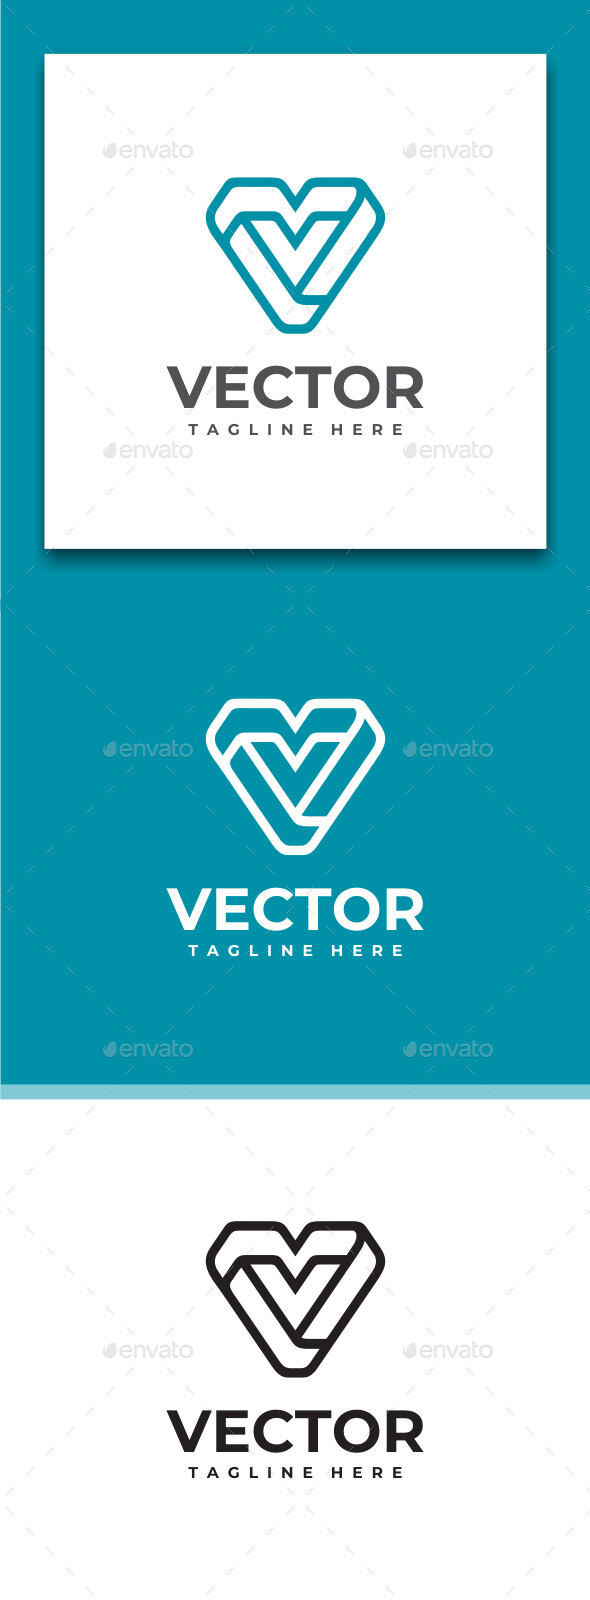 [DOWNLOAD]Vector - Abstract Letter V Logo Design